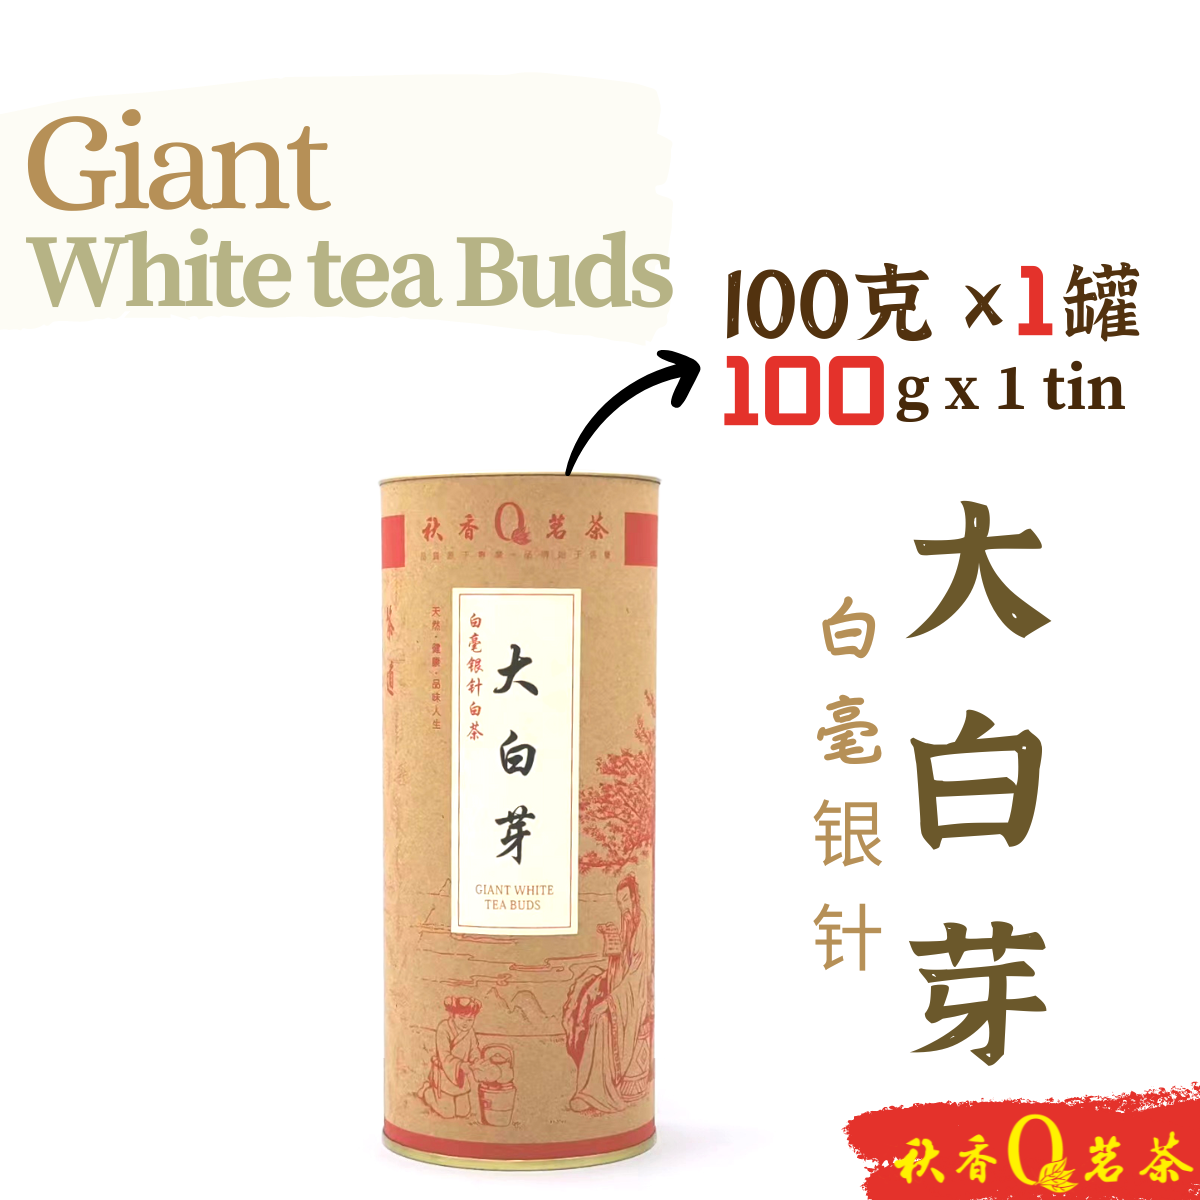 大白芽 Giant White tea Buds【100g】｜【白茶 White tea】